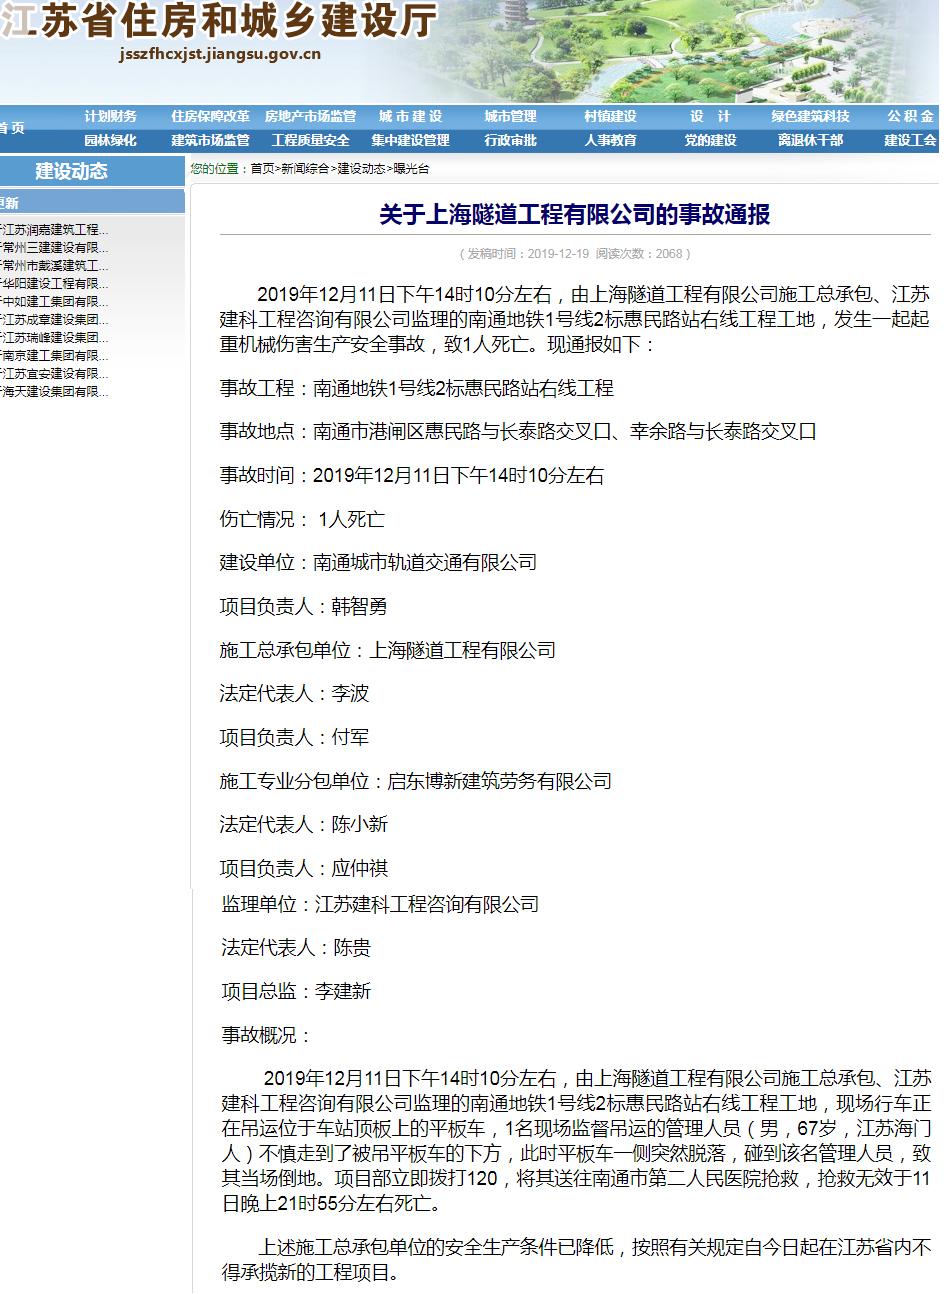 上海隧道工程有限公司南通地铁1号线工程发生事故致1死 被禁止在江苏承揽新工程